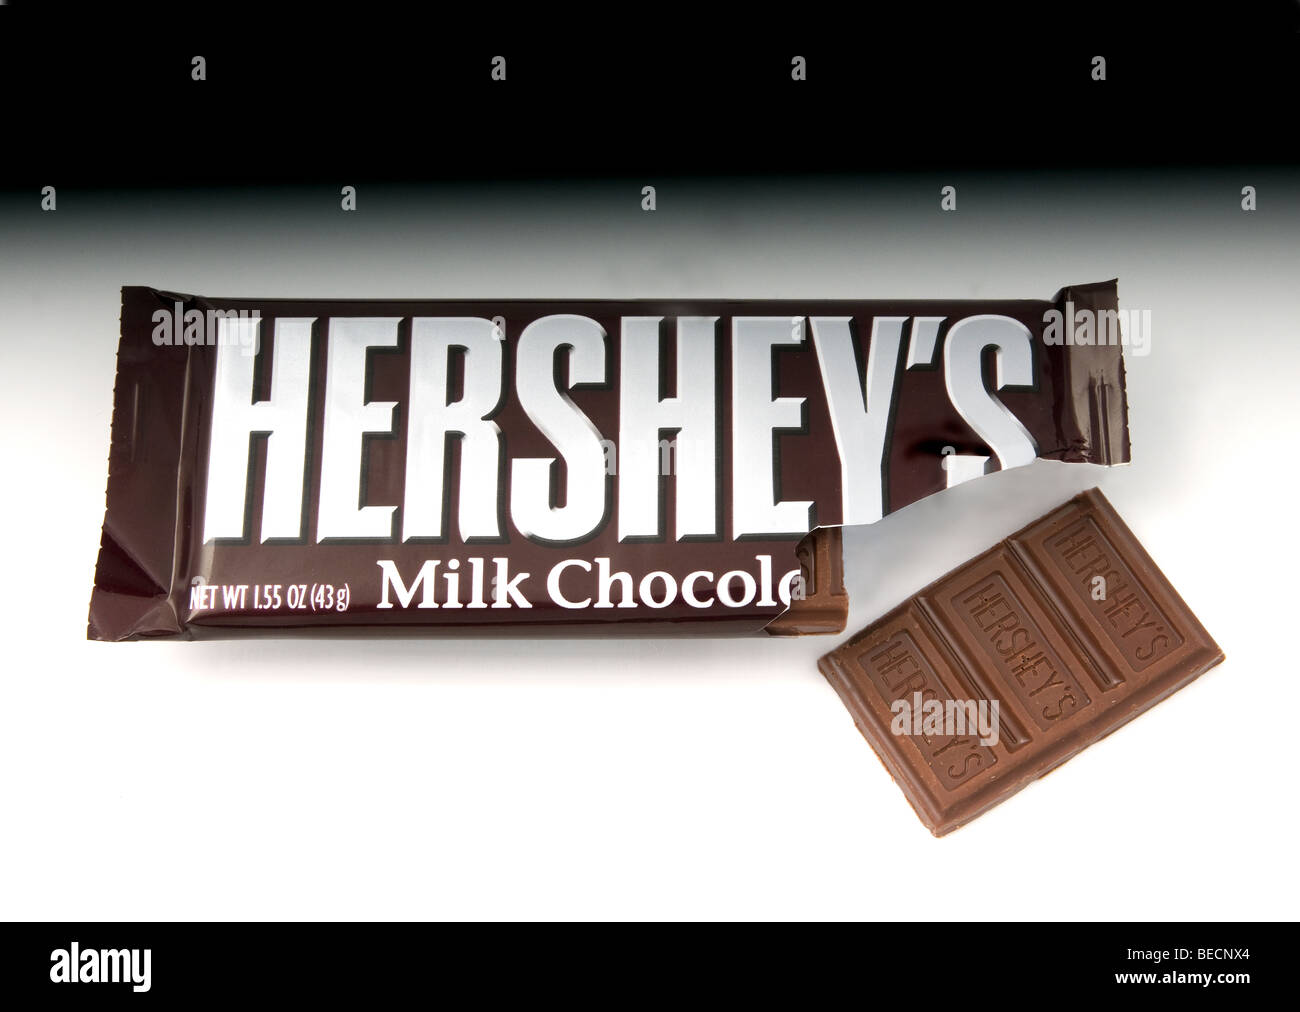 Studio shot of Hershey's milk chocolate bar Stock Photo